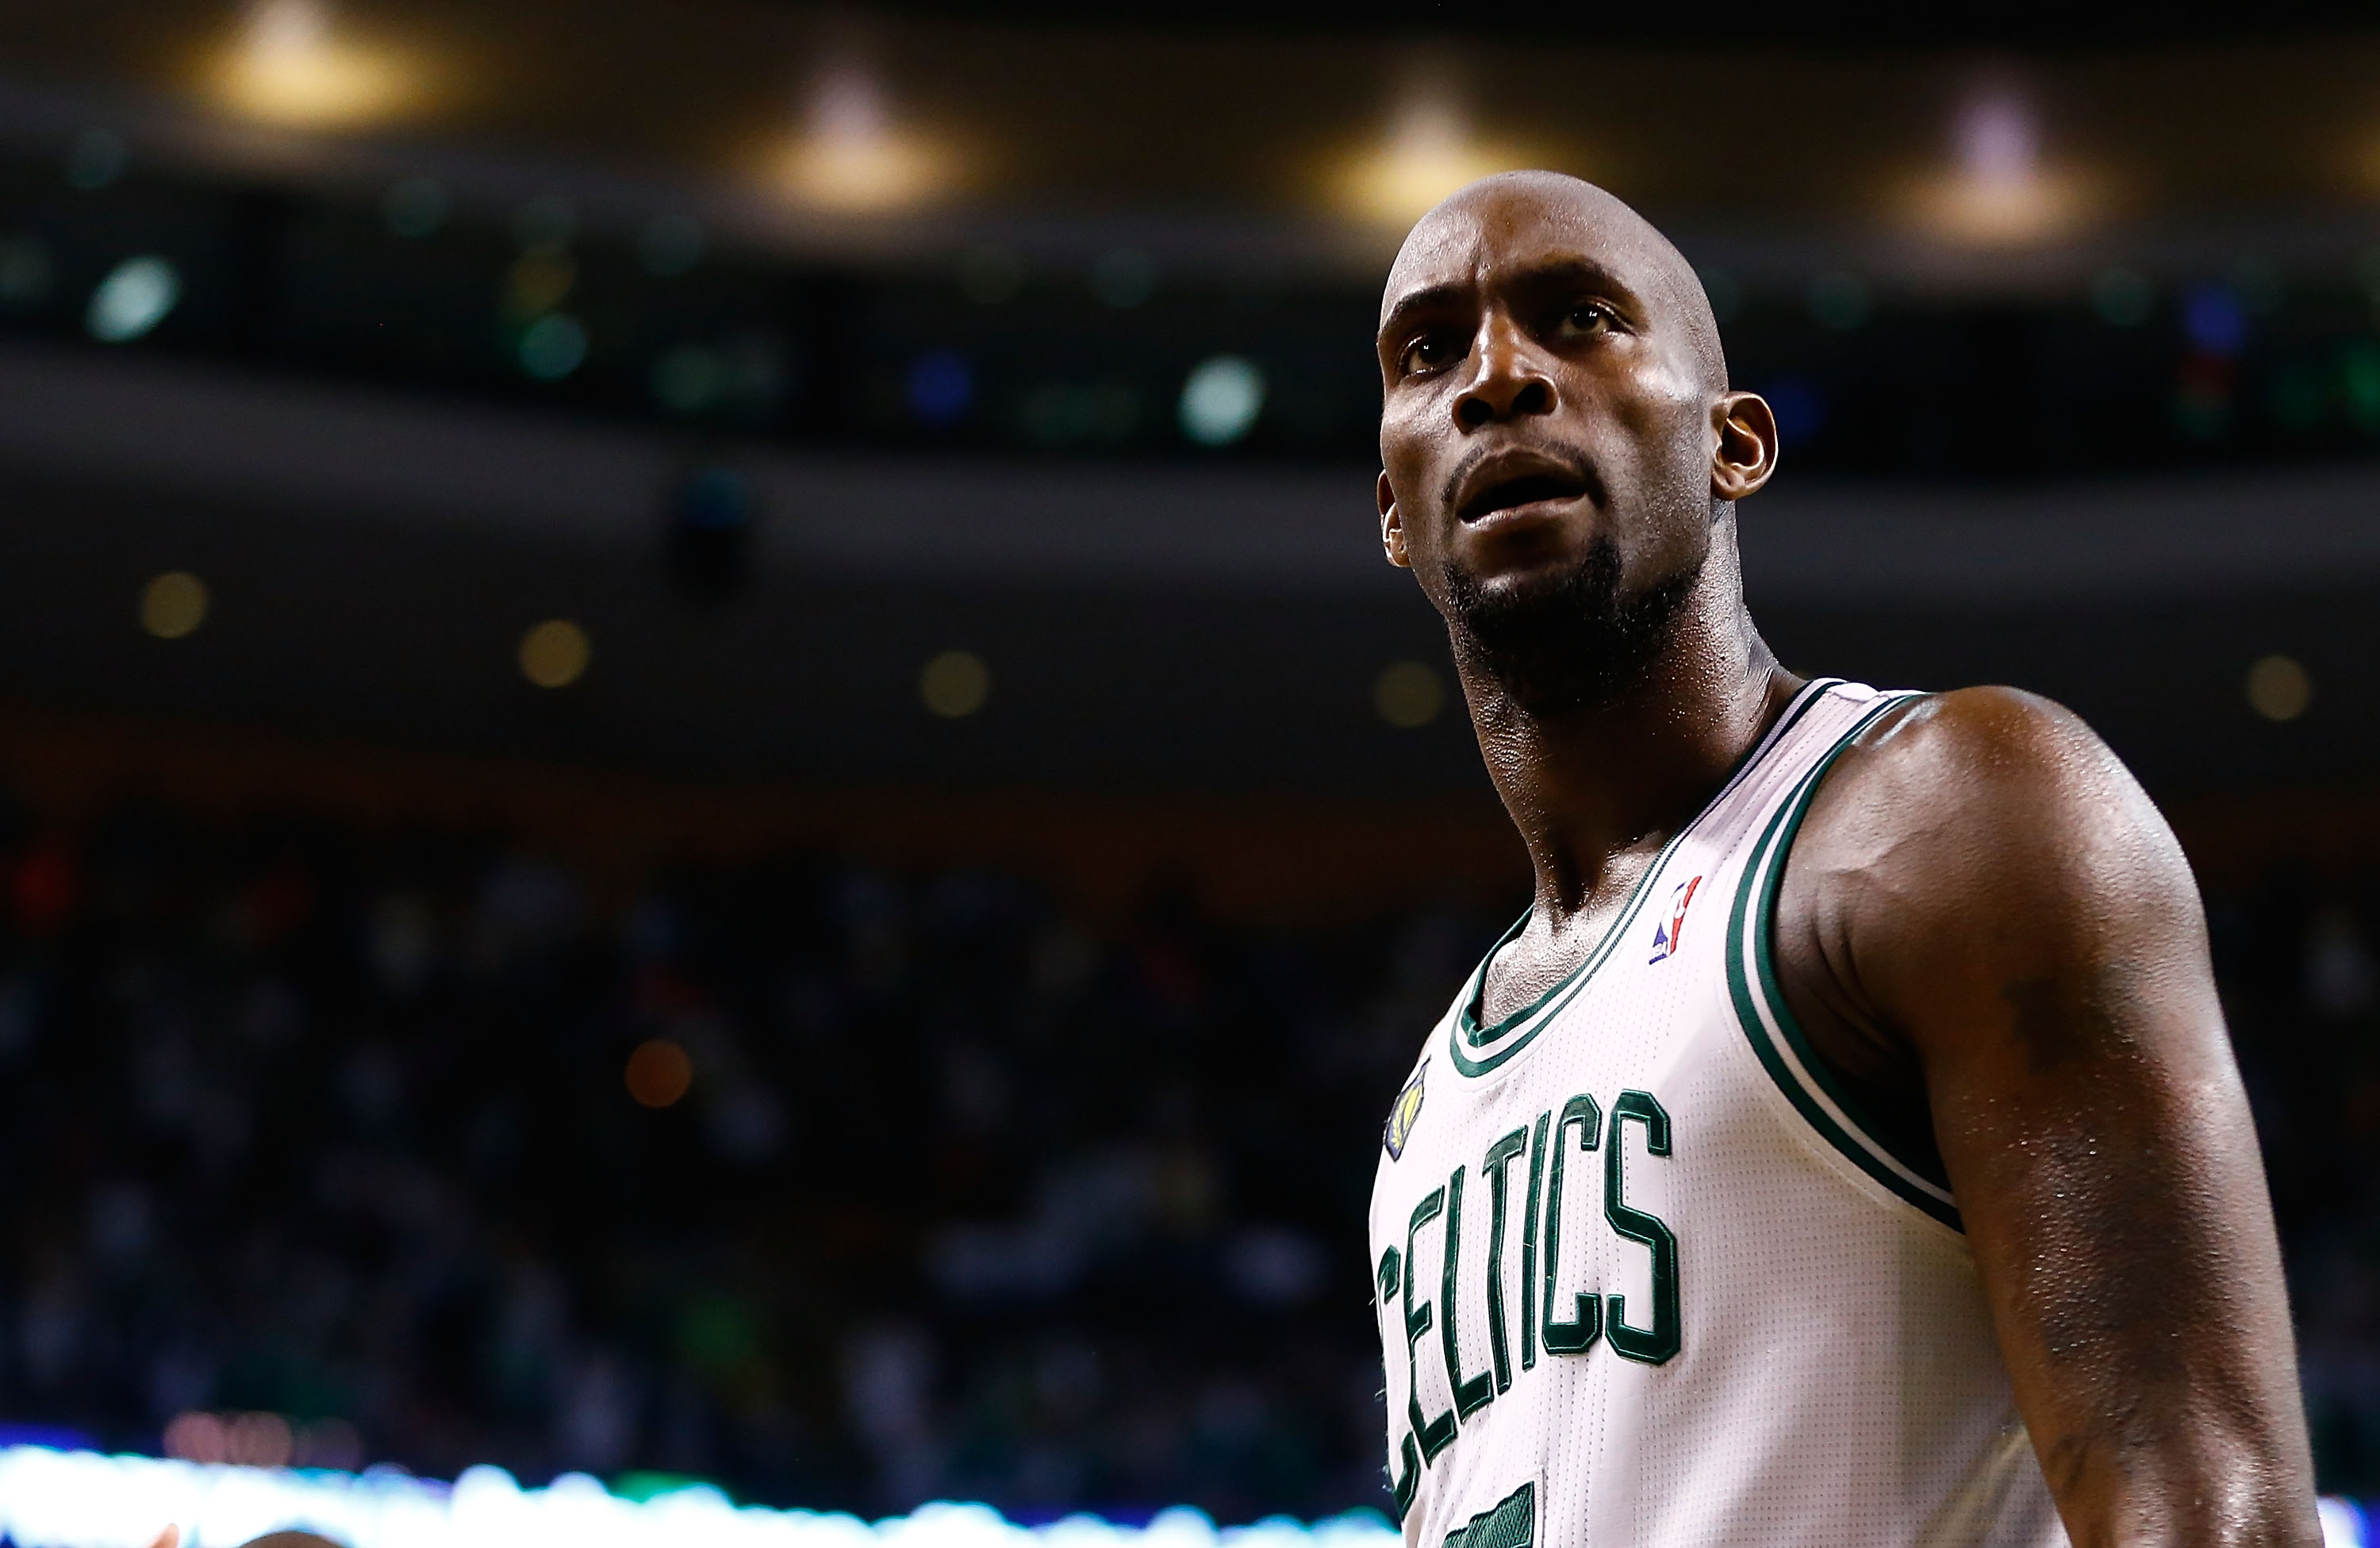 Celtics will retire Kevin Garnett's No. 5 jersey next season